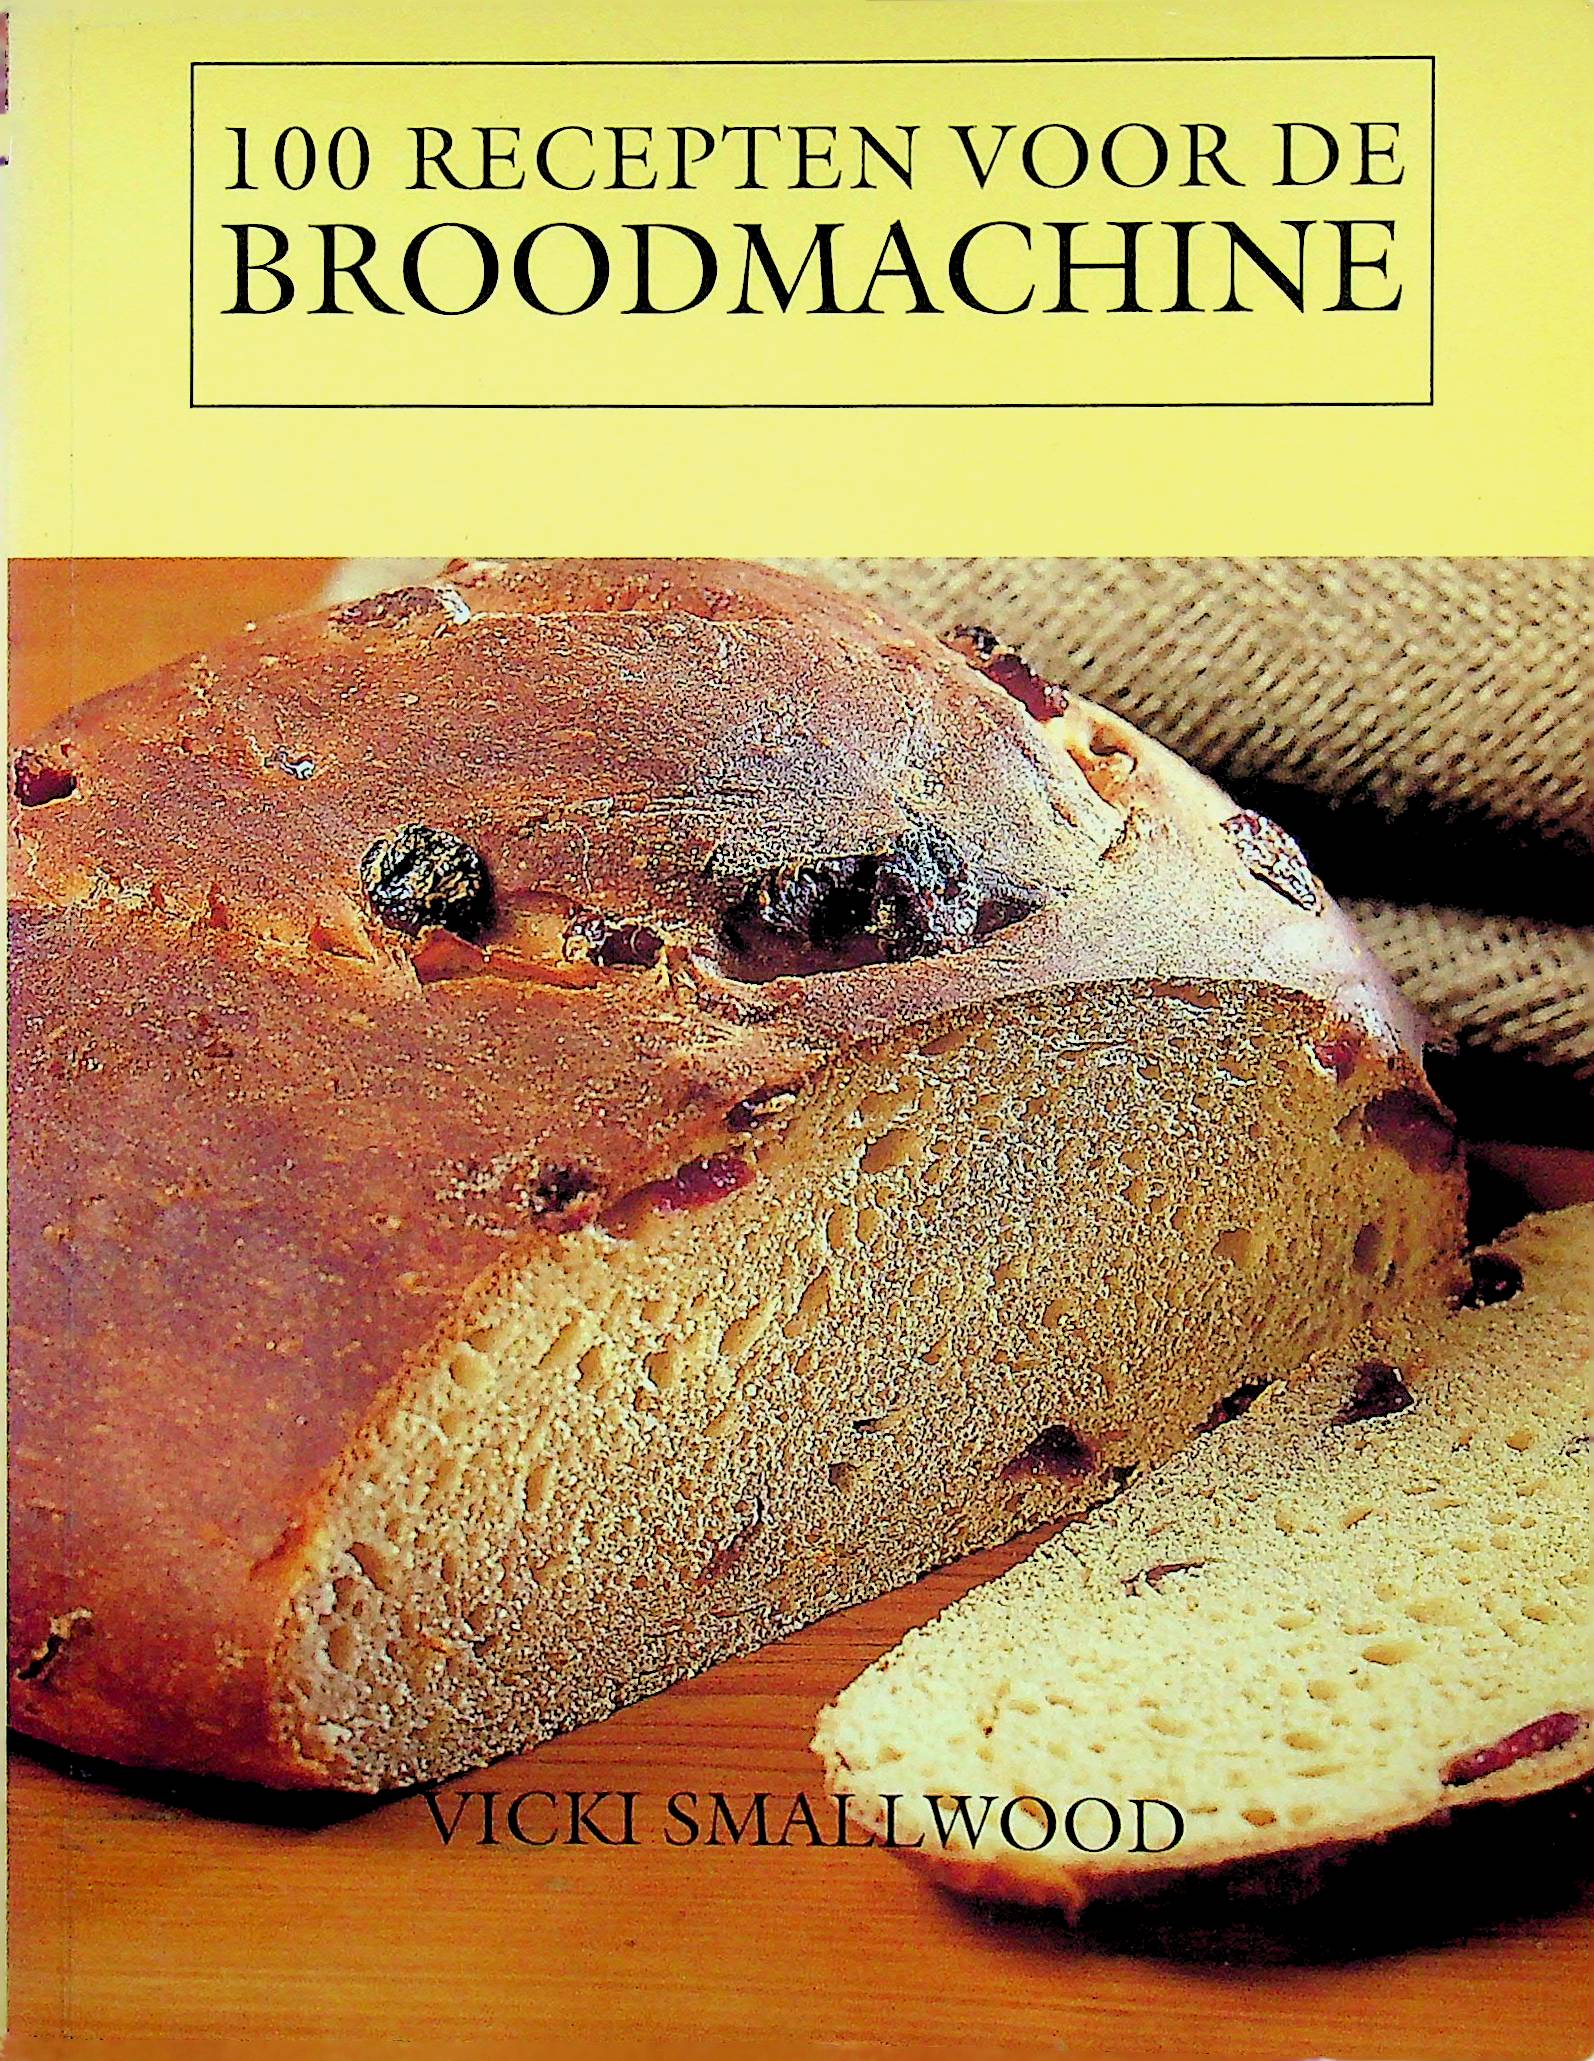 100 recepten voor de broodmachine - vicki smallwood 2003